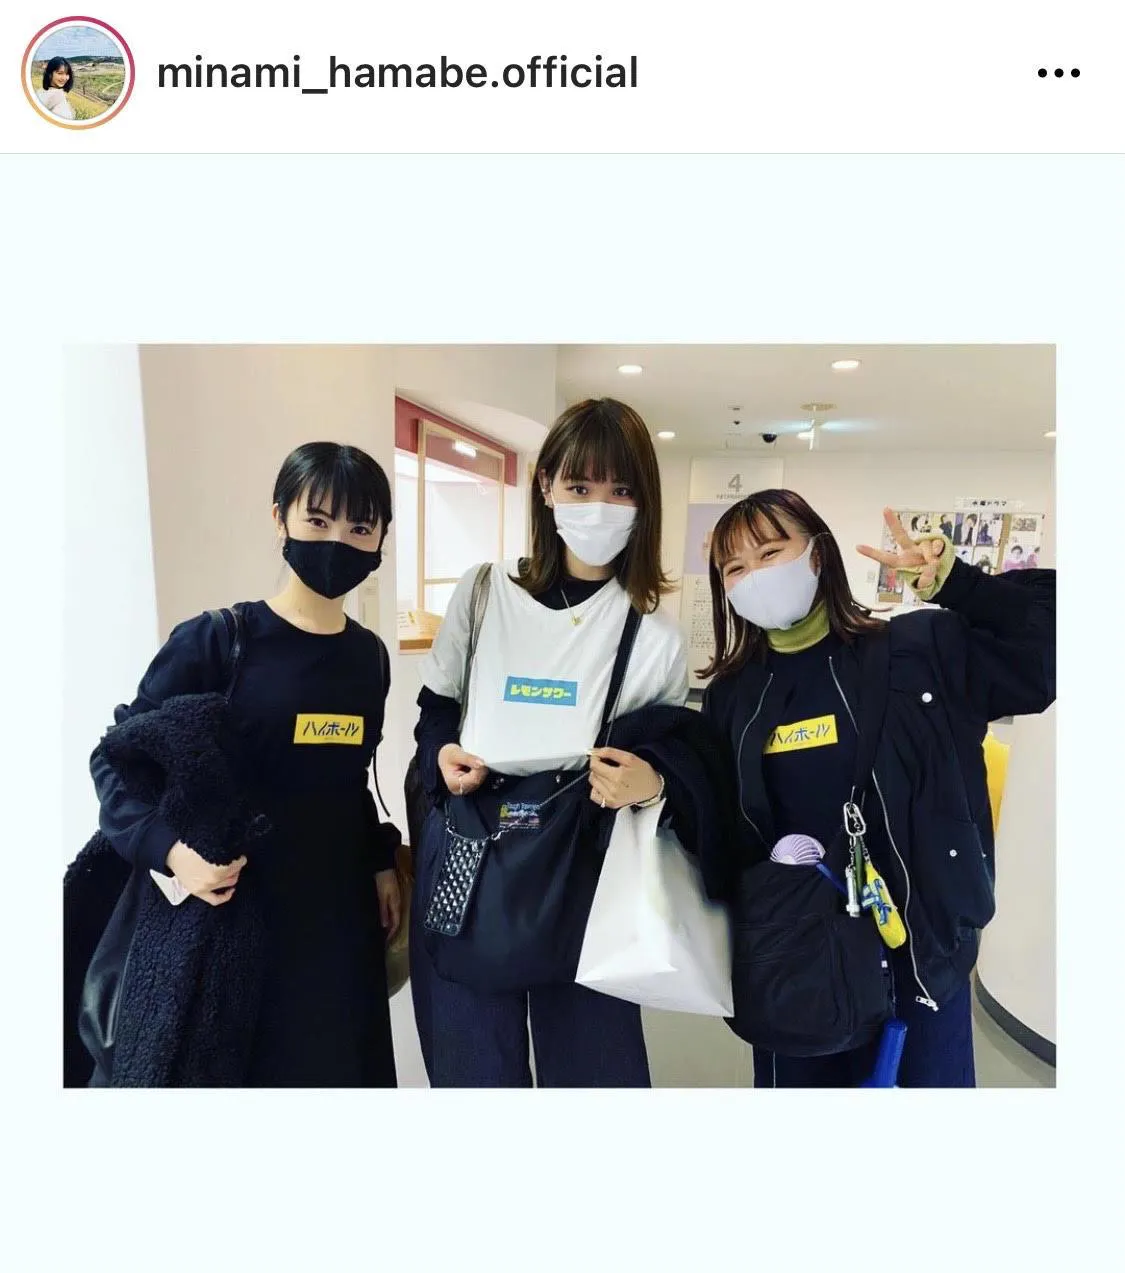 ※浜辺美波公式Instagram(minami_hamabe.official)より